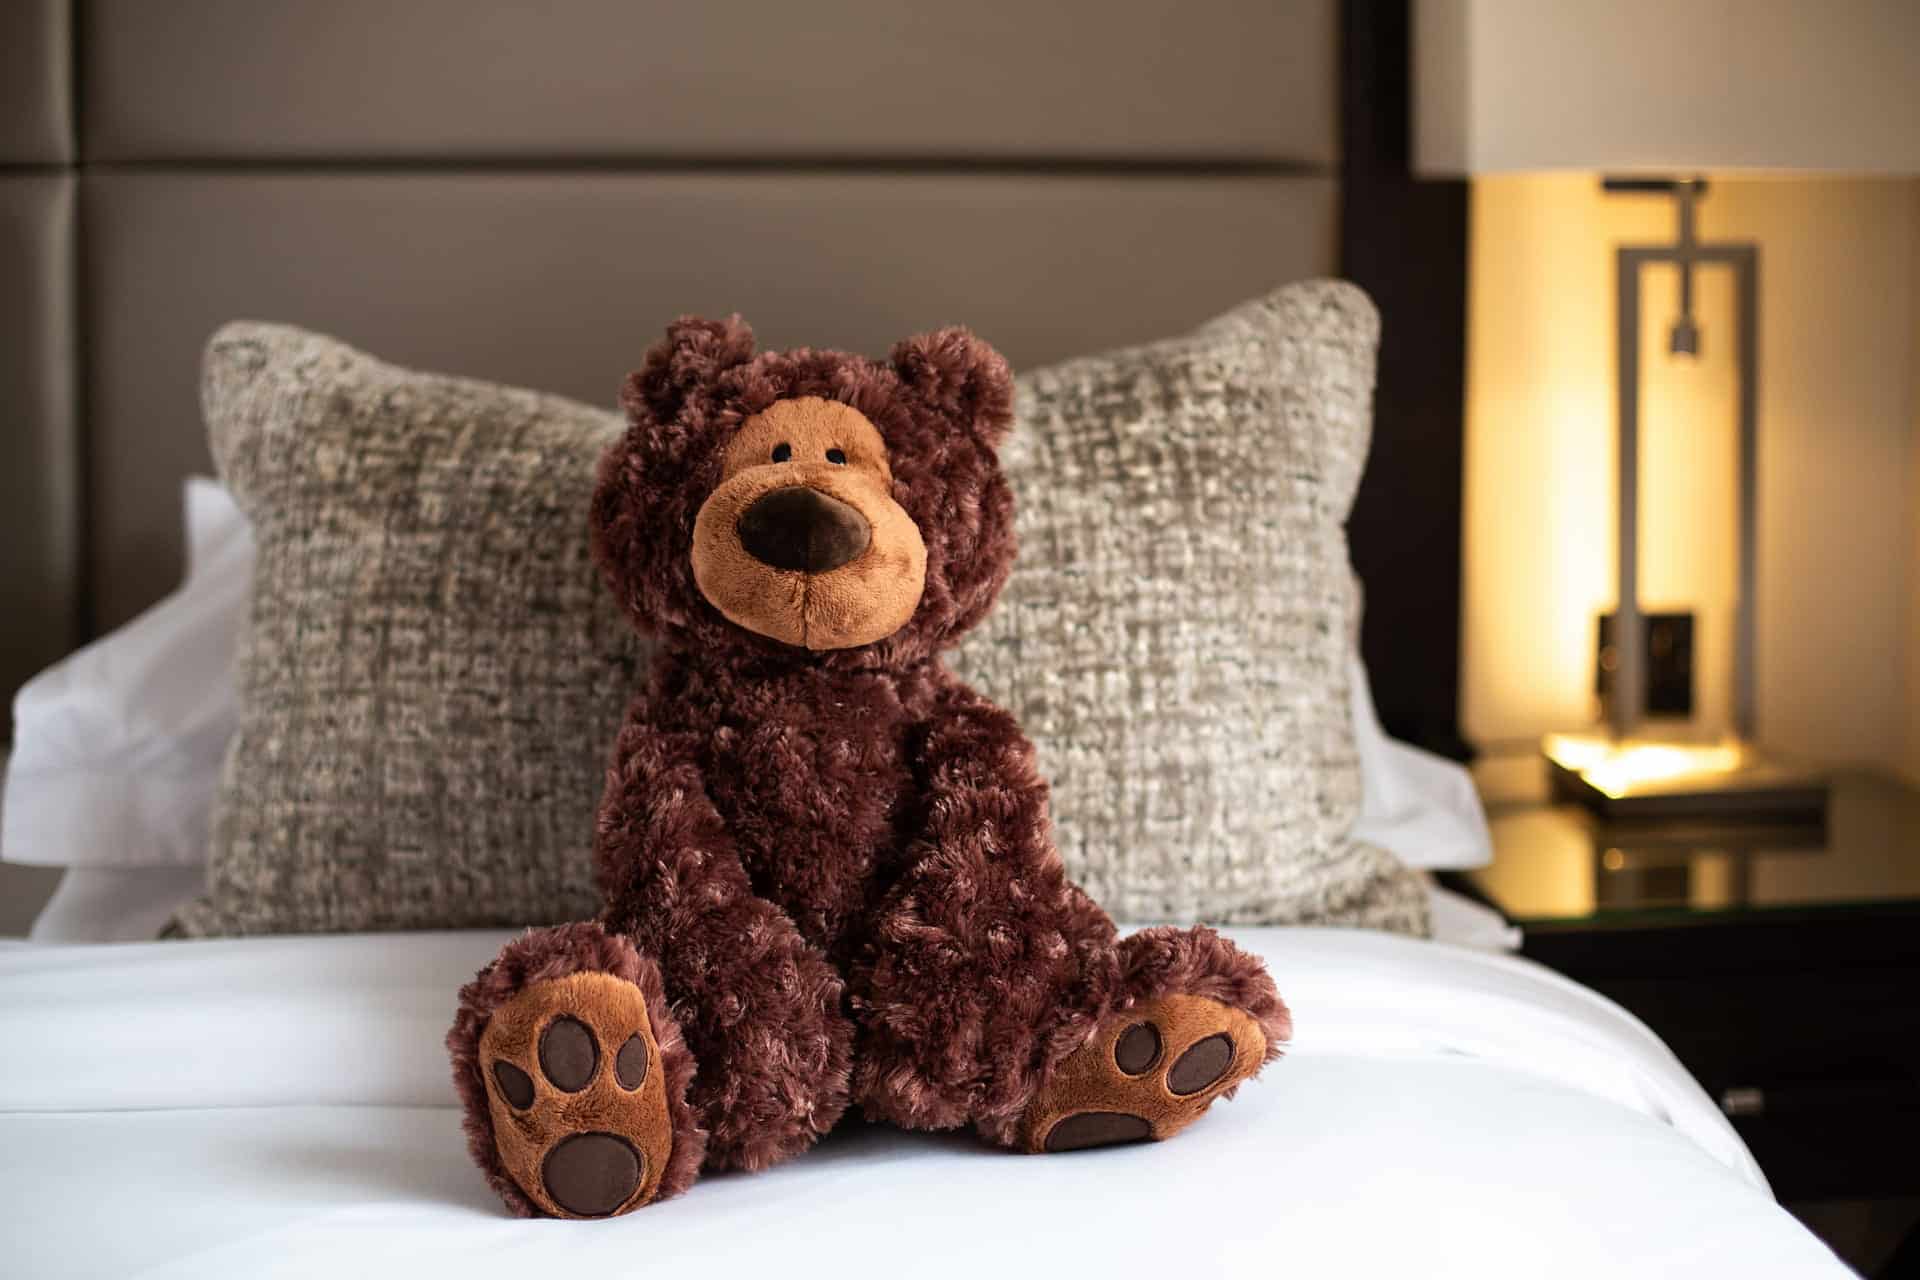 Teddy Bear on bed